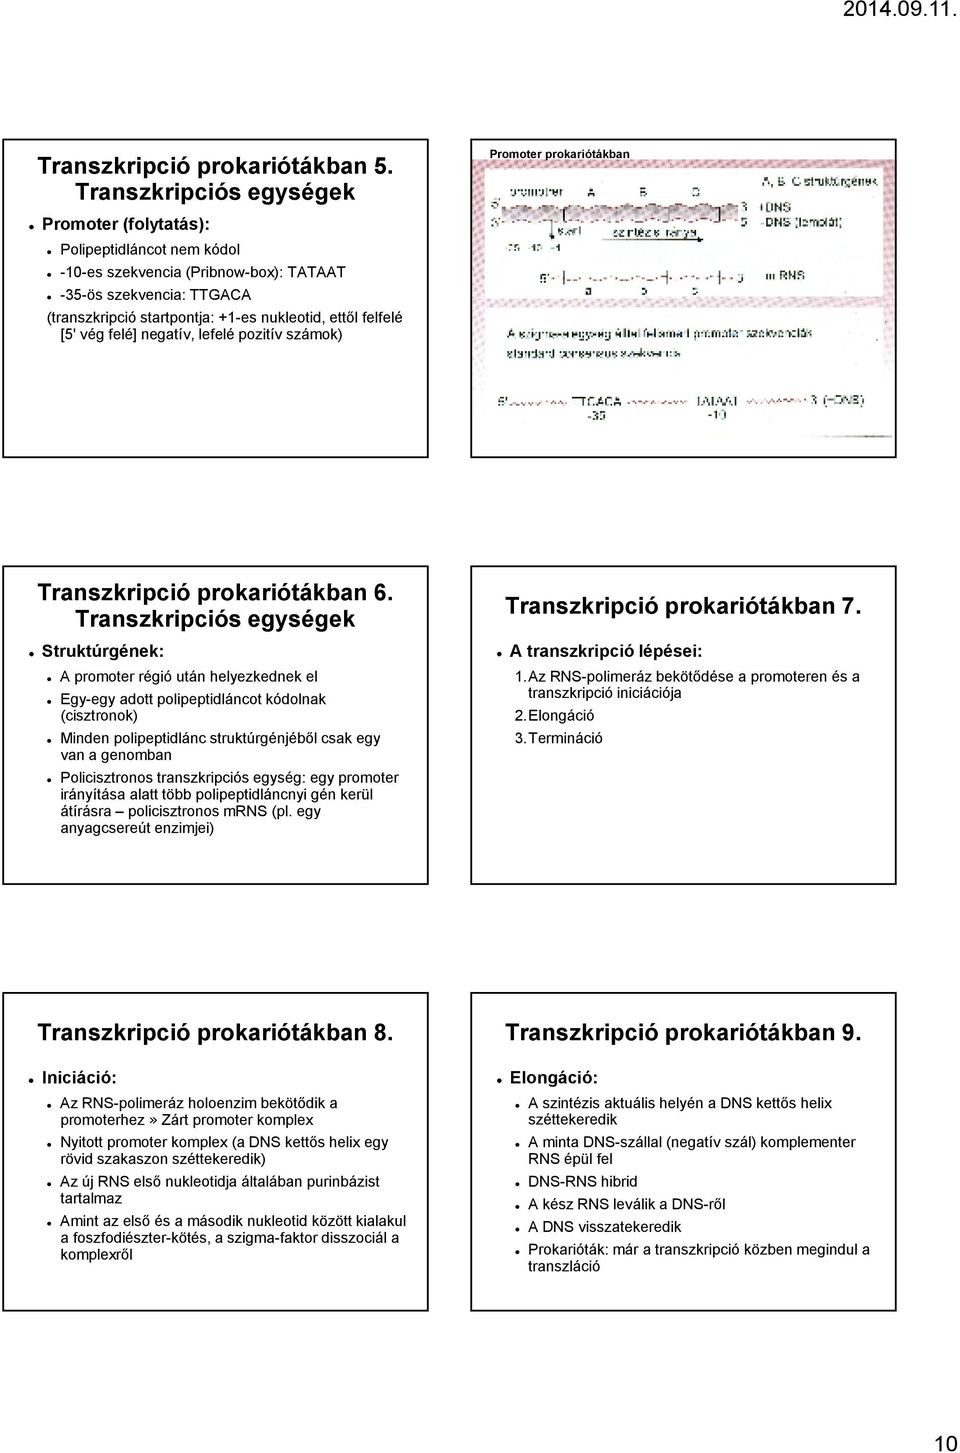 [5' vég felé] negatív, lefelé pozitív számok) Promoter prokariótákban Transzkripció prokariótákban 6.